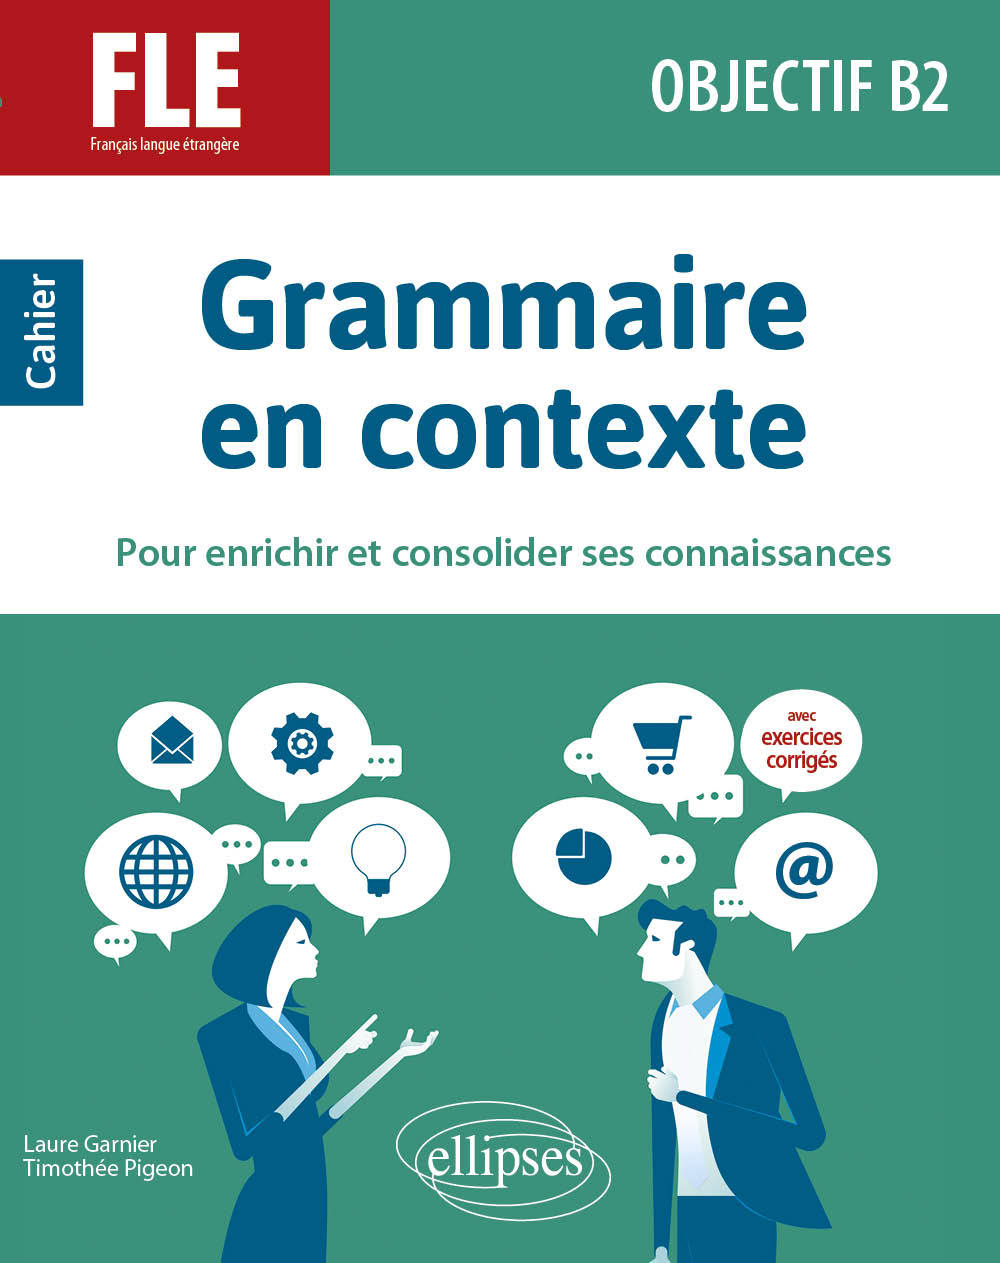 Book FLE (français langue étrangère). Objectif B2. Grammaire en contexte Laure Garnier